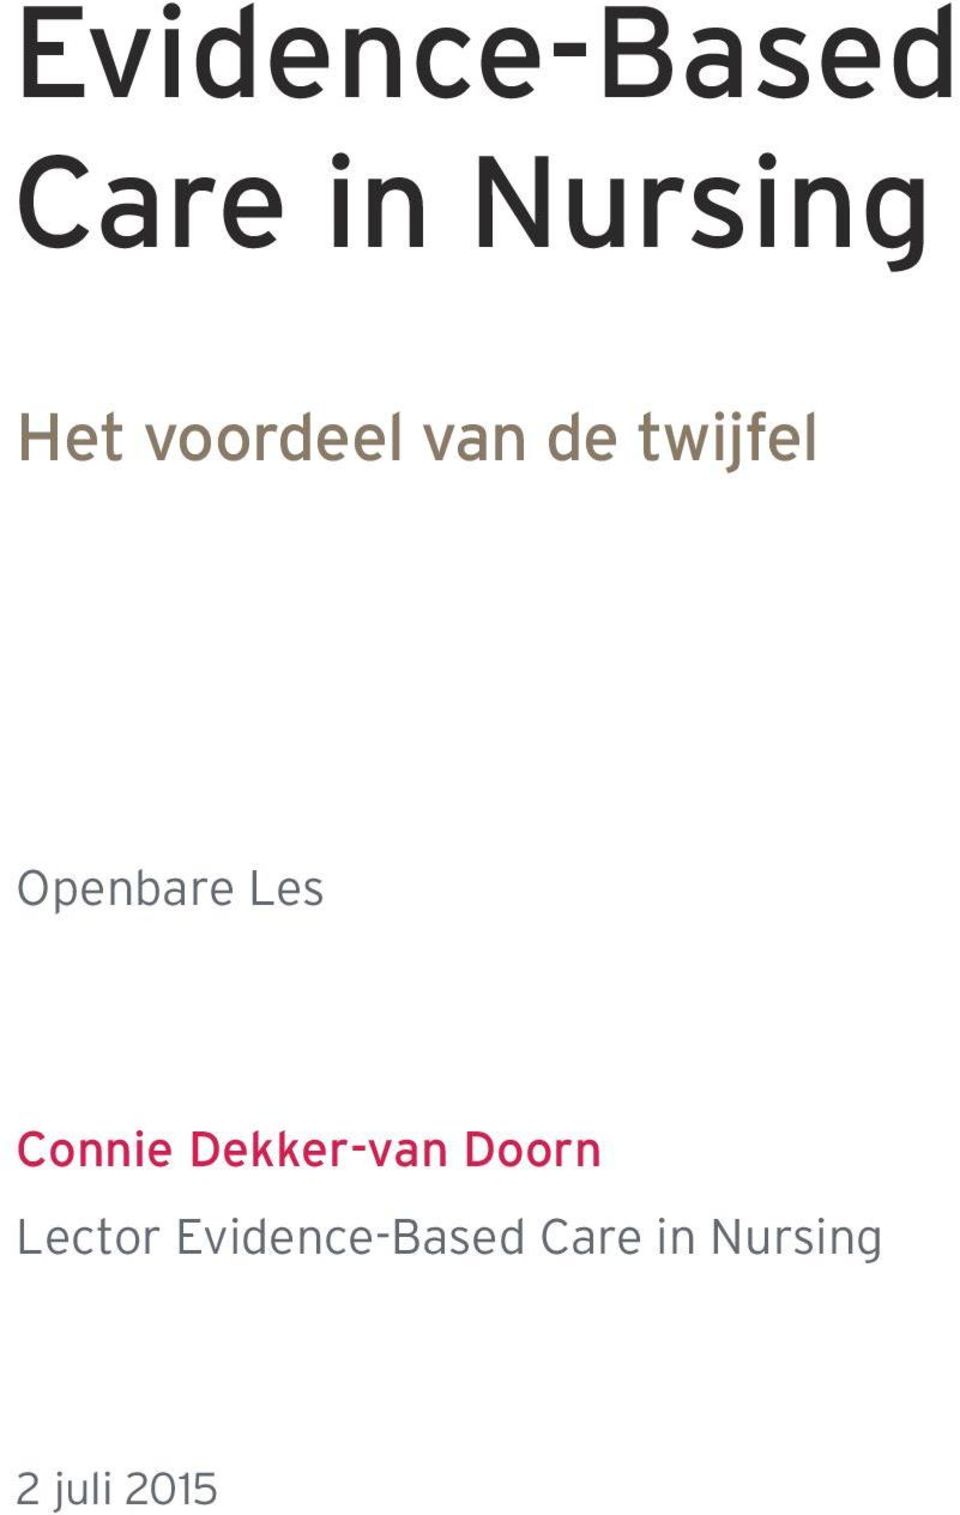 Connie Dekker-van Doorn Lector